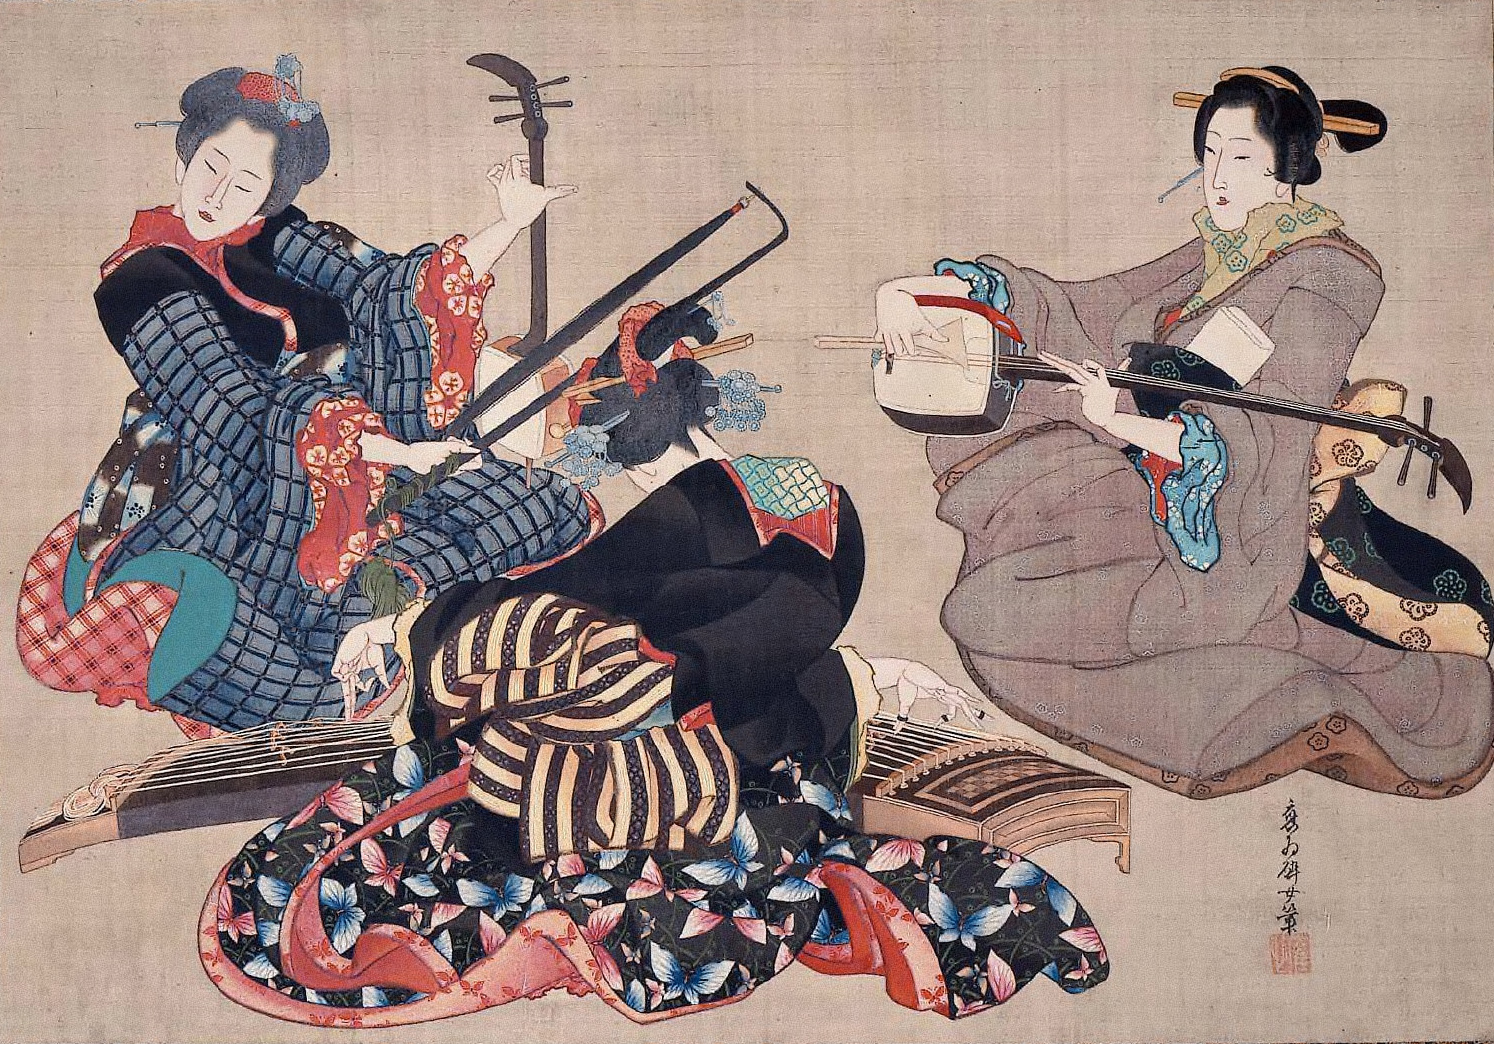 3곡 합주도 (Three Women Playing Musical Instruments) by Katsushika Ōi - 1850 - 46.5 x 67.5 cm 